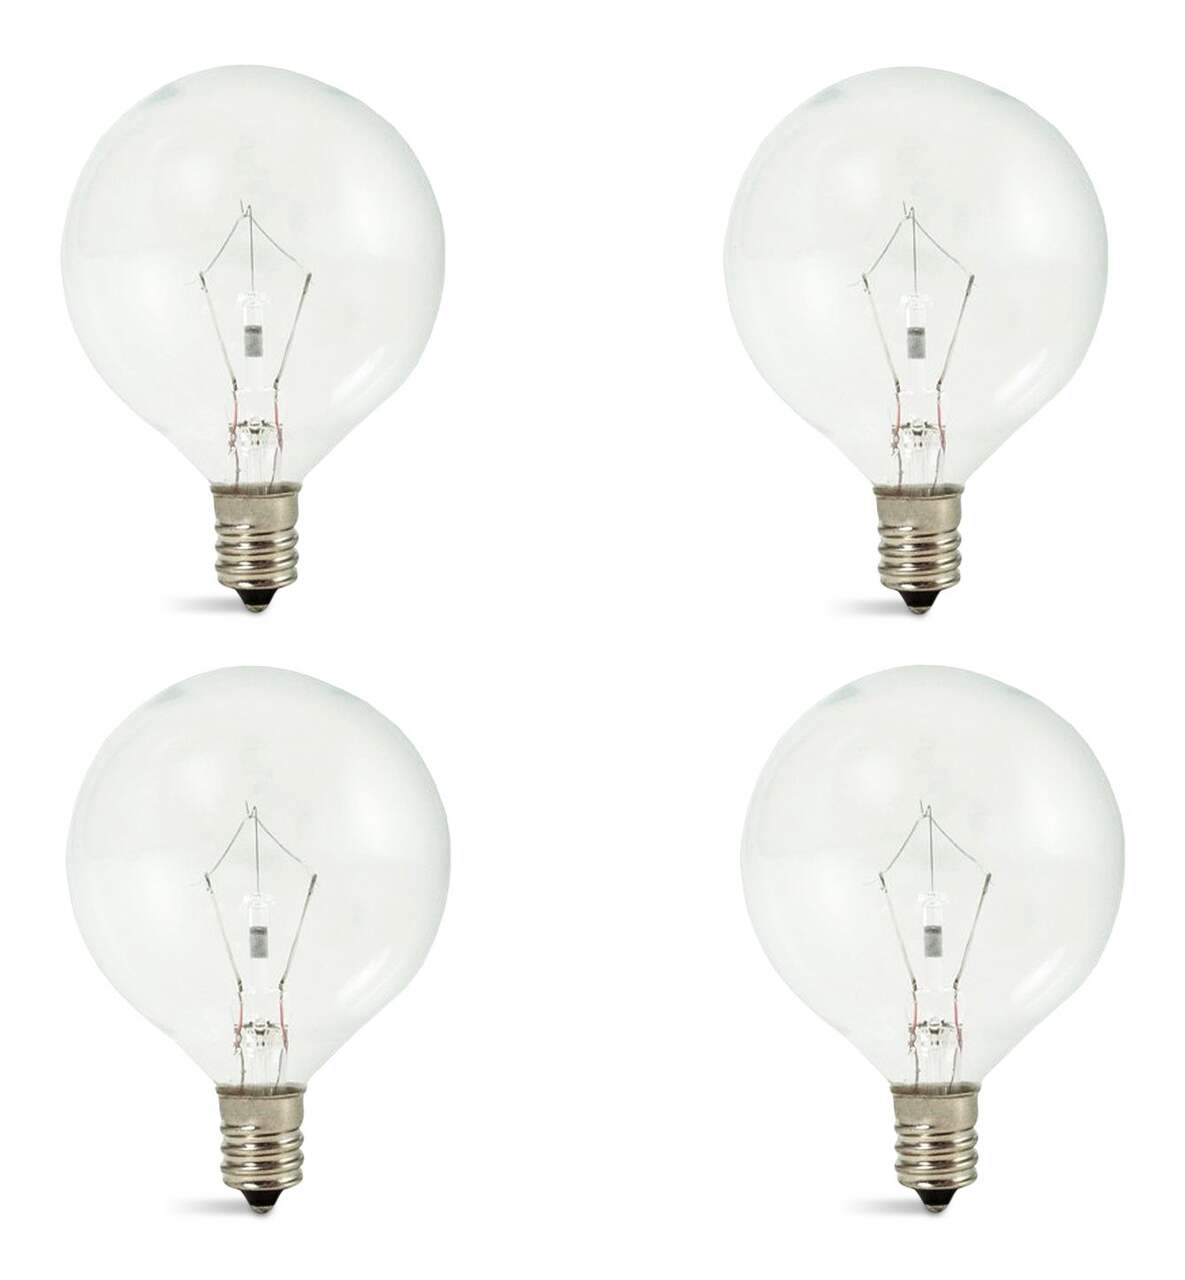 Ampoule LED 16W g12 Lampe à insérer horizontale 100-277V Lampe halogène à  intensité variable pour